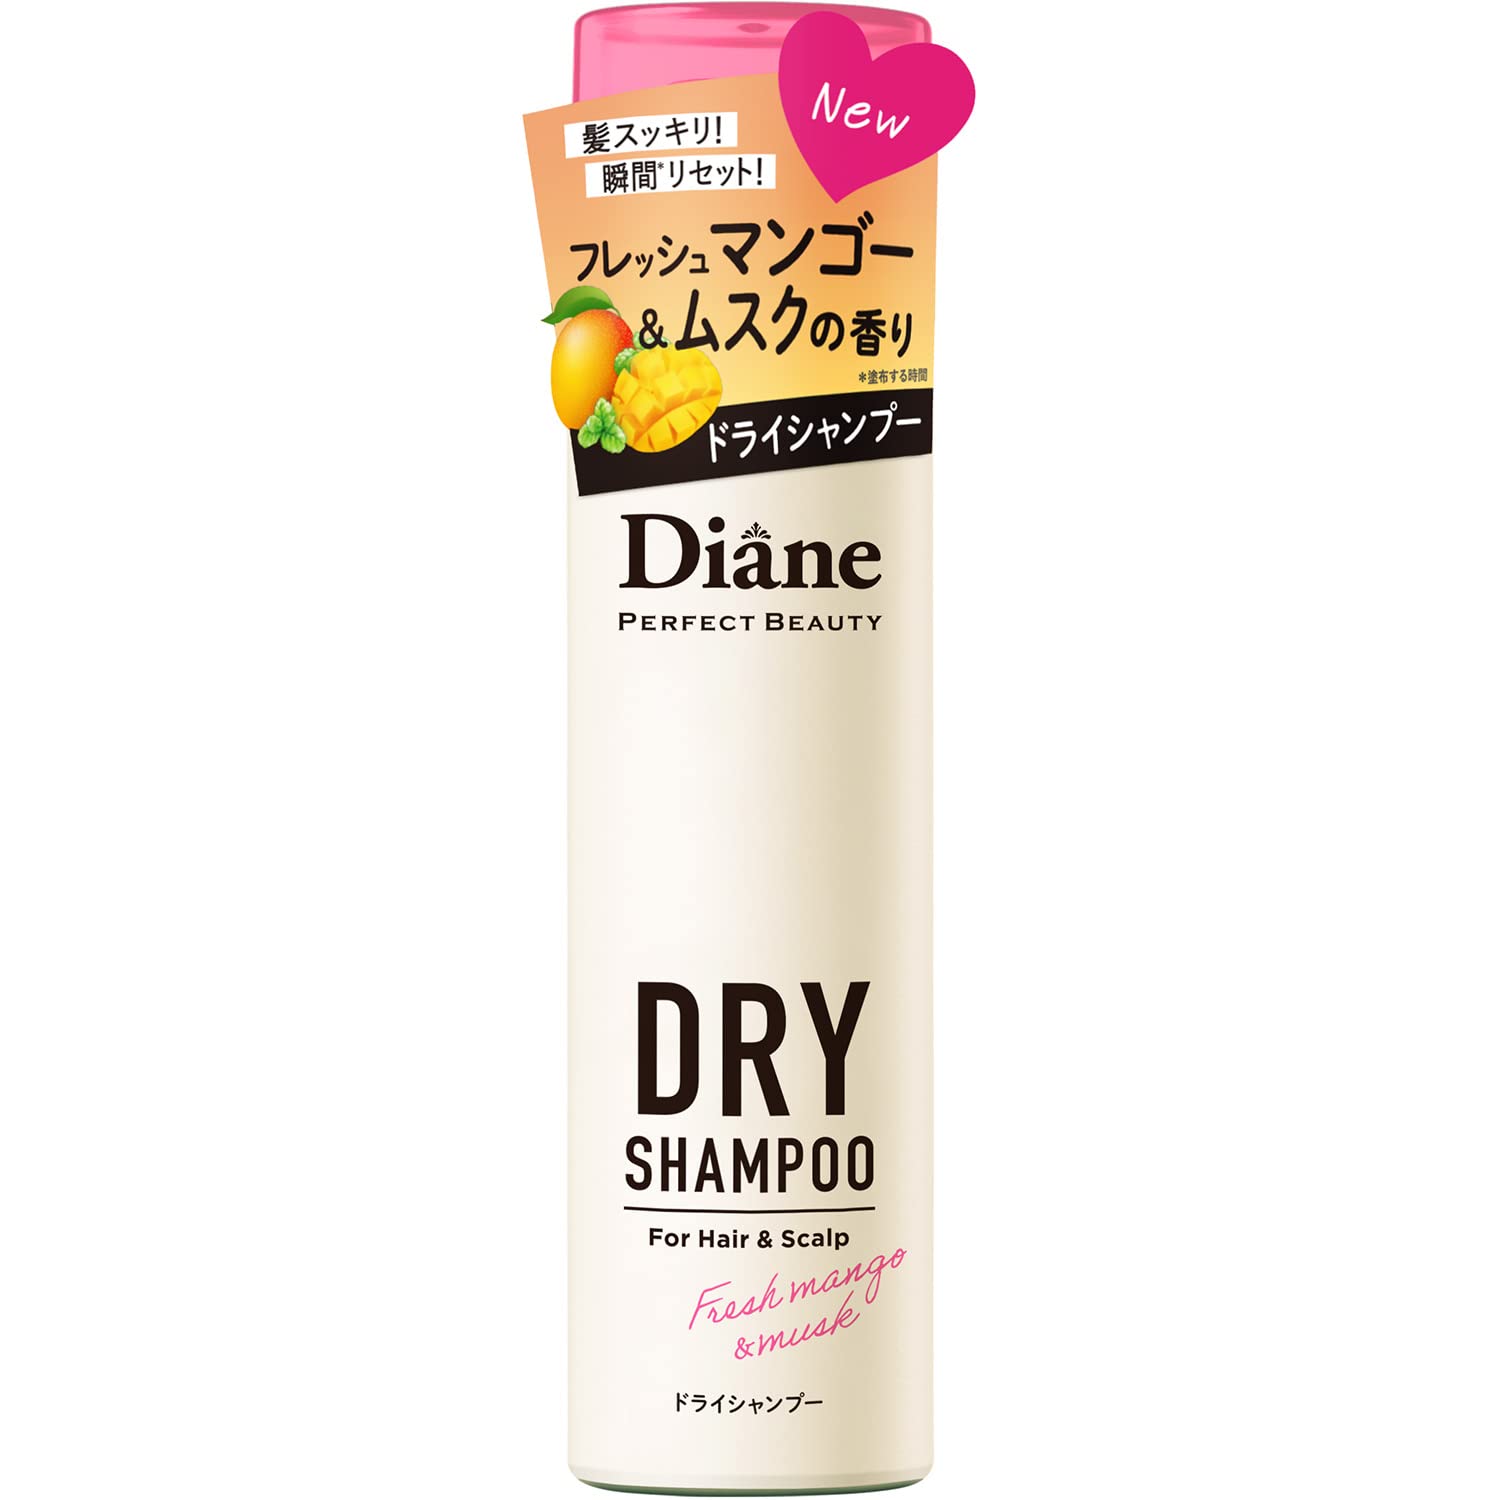 Moist Diane Perfect Beauty Perfect Dry Shampoo Fresh Mango & Musk